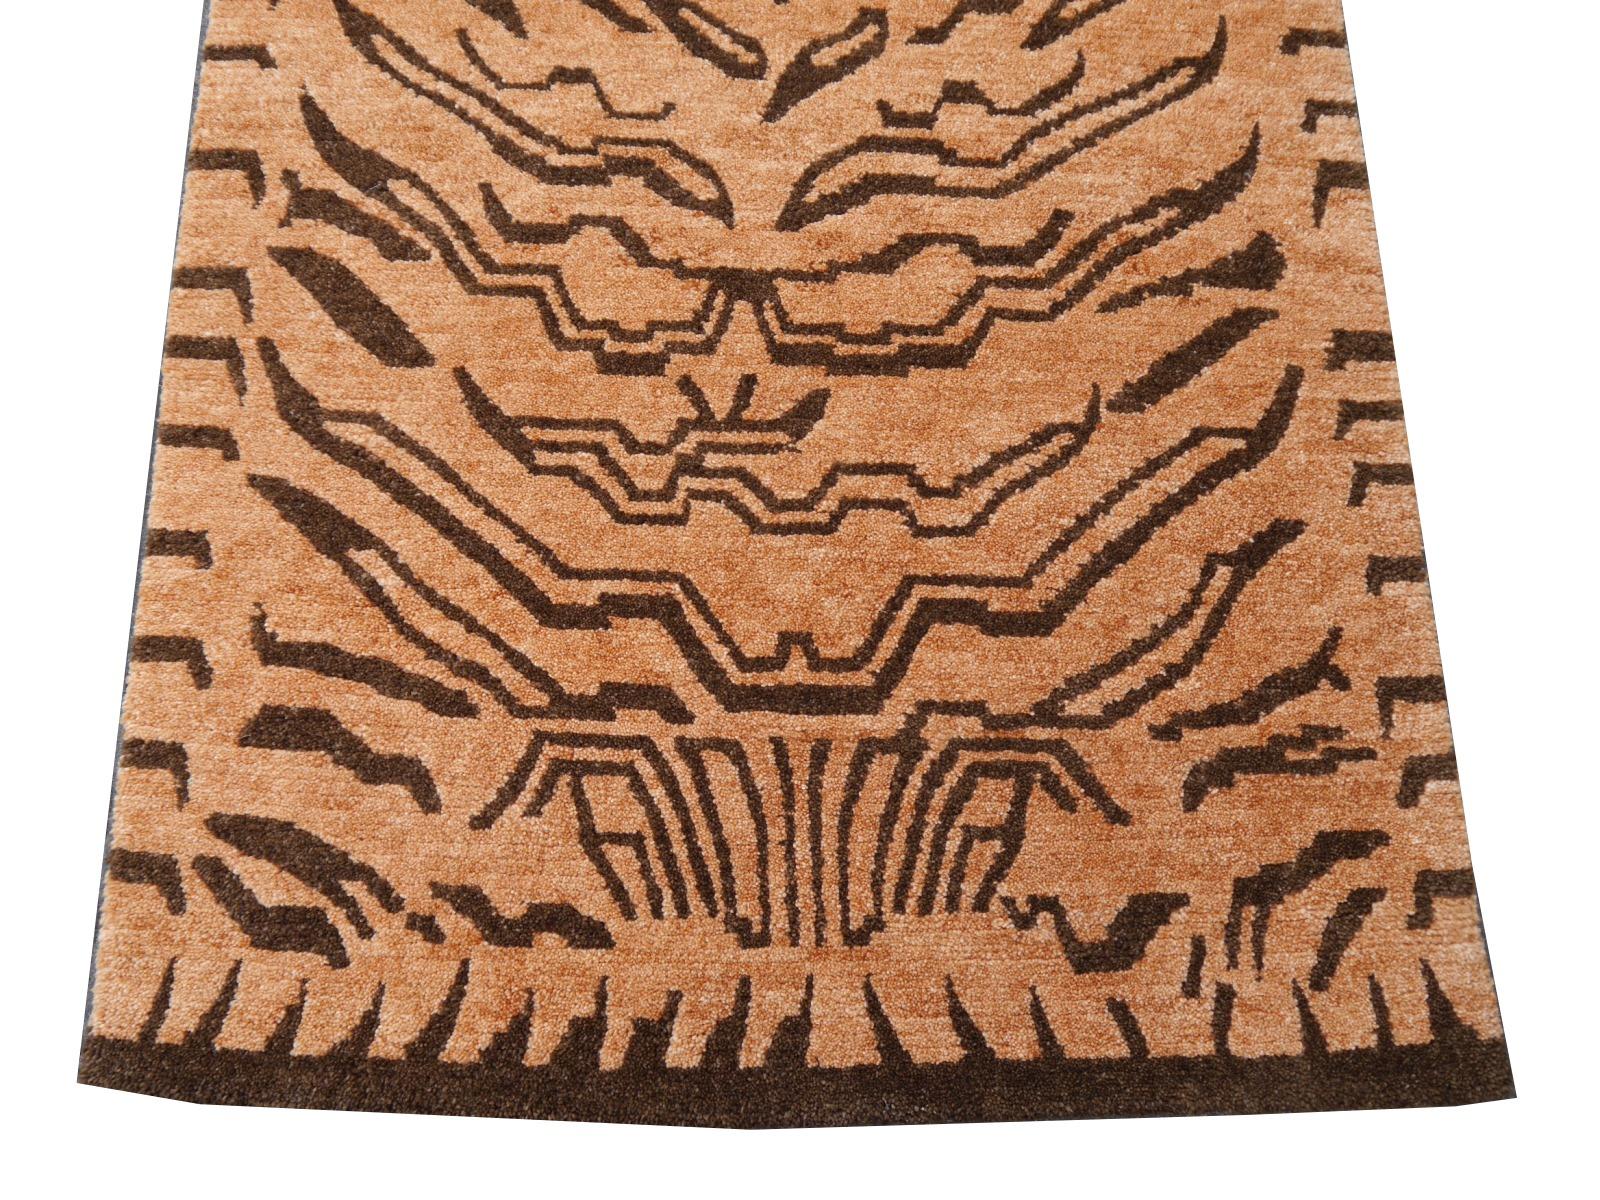 Ein tibetischer Tigerteppich, handgeknüpft in Nepal.

Dieses traditionelle Tiger-Muster findet sich typischerweise auf antiken Teppichen, die Khaden genannt werden. Er beschreibt einen kleinen Teppich von etwa 3 x 6 Fuß, der in Tibet zur Dekoration